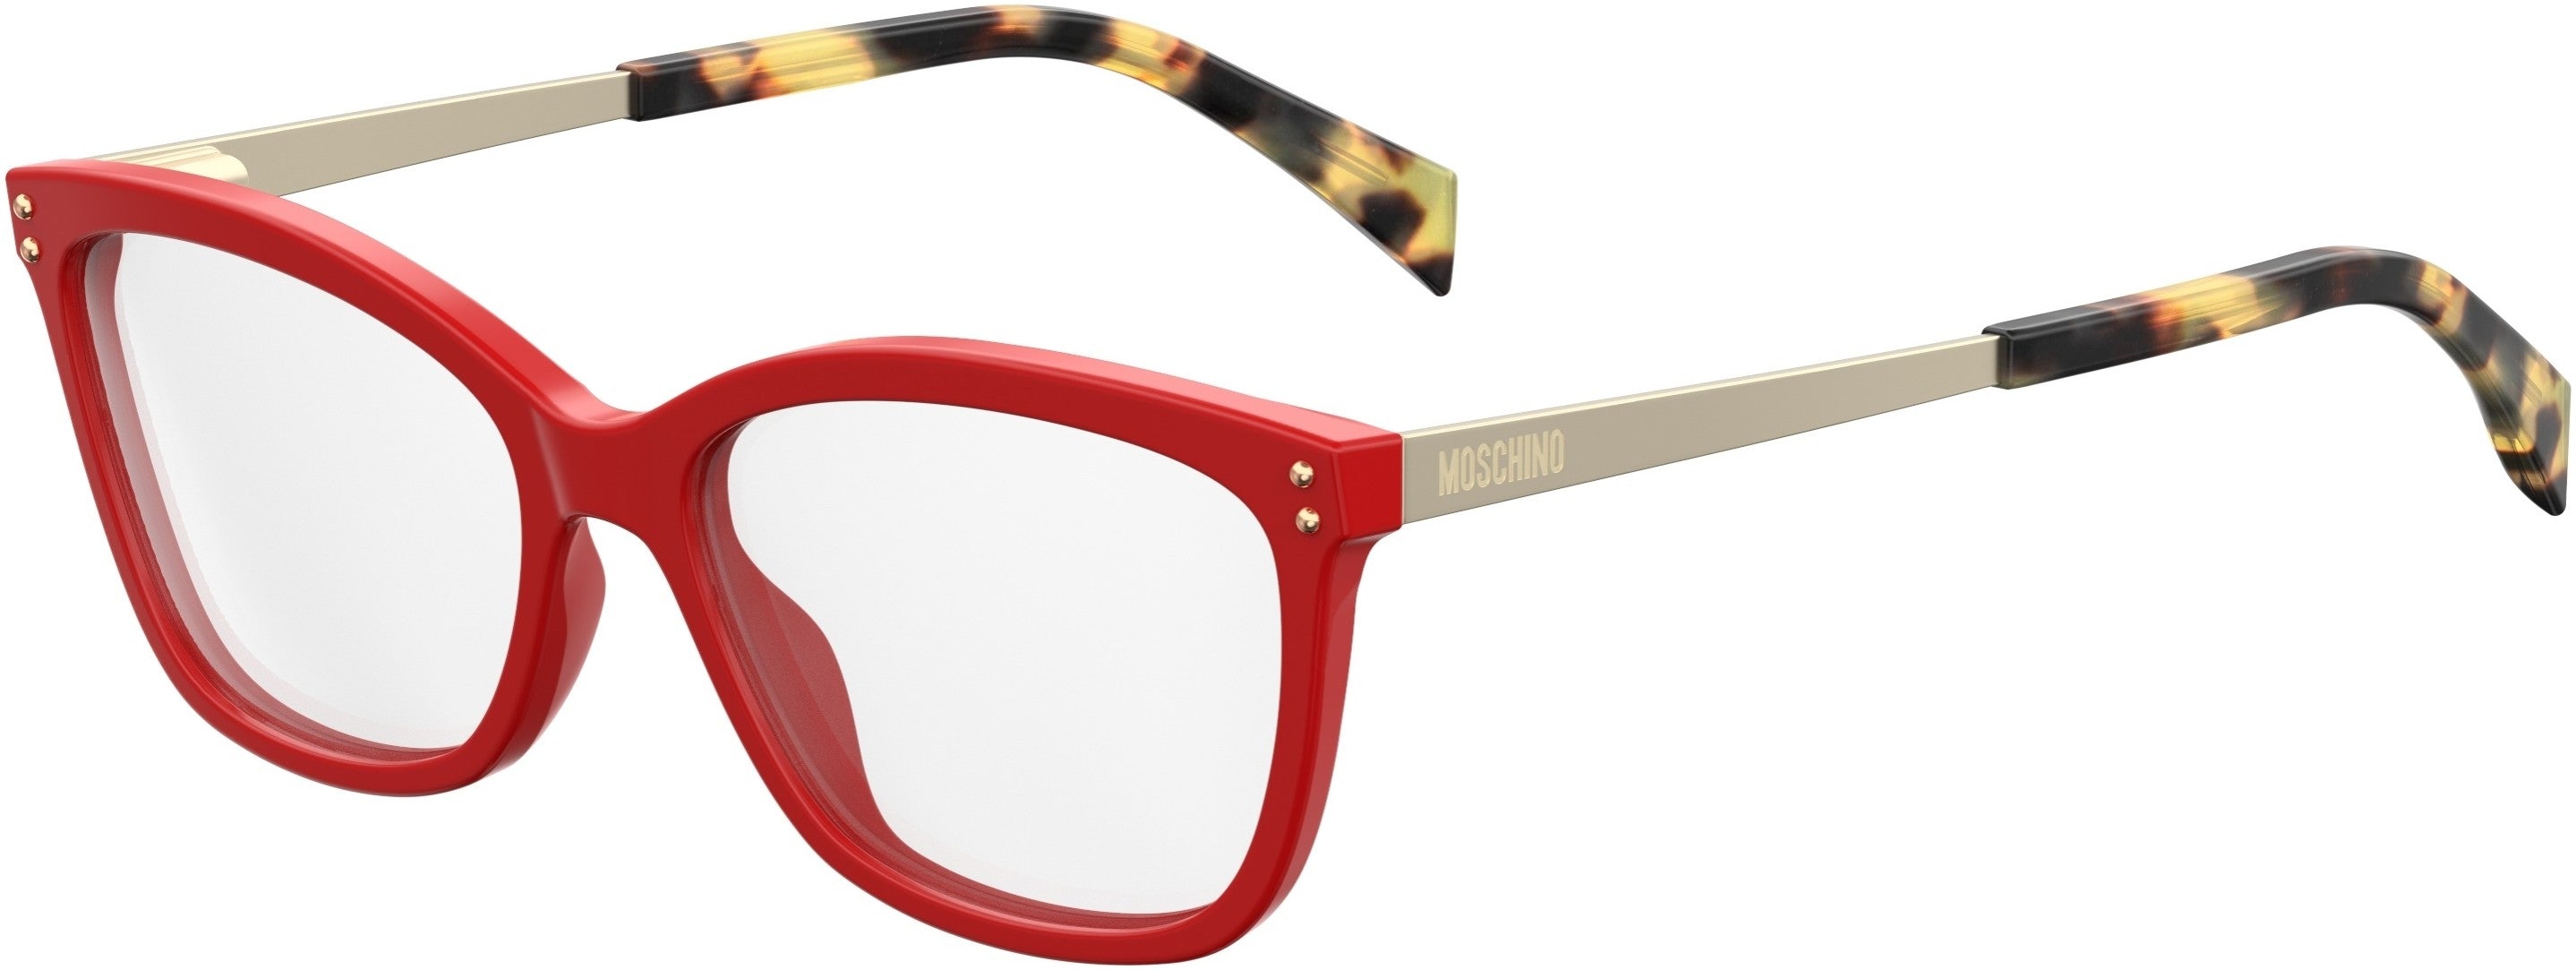  Moschino 504 Square Eyeglasses 0C9A-0C9A  Red (00 Demo Lens)